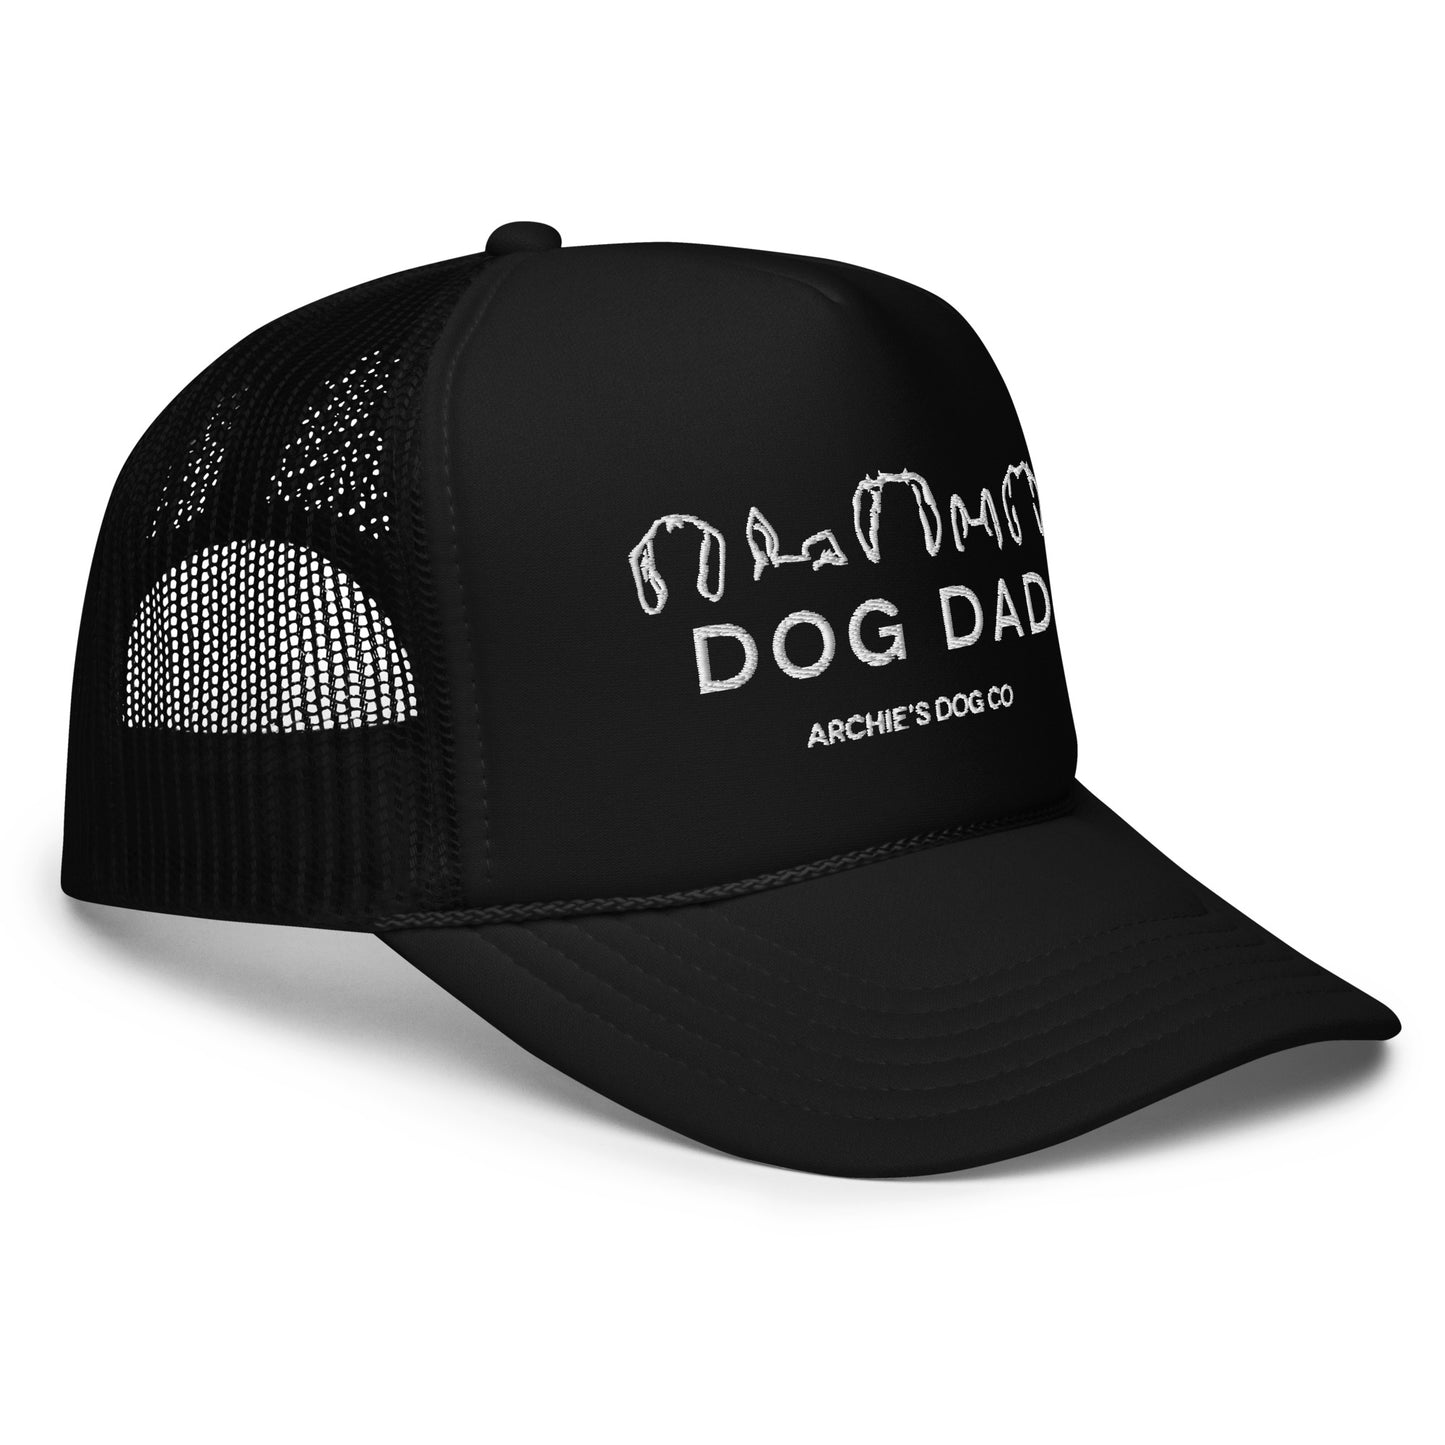 Dog Dad trucker hat